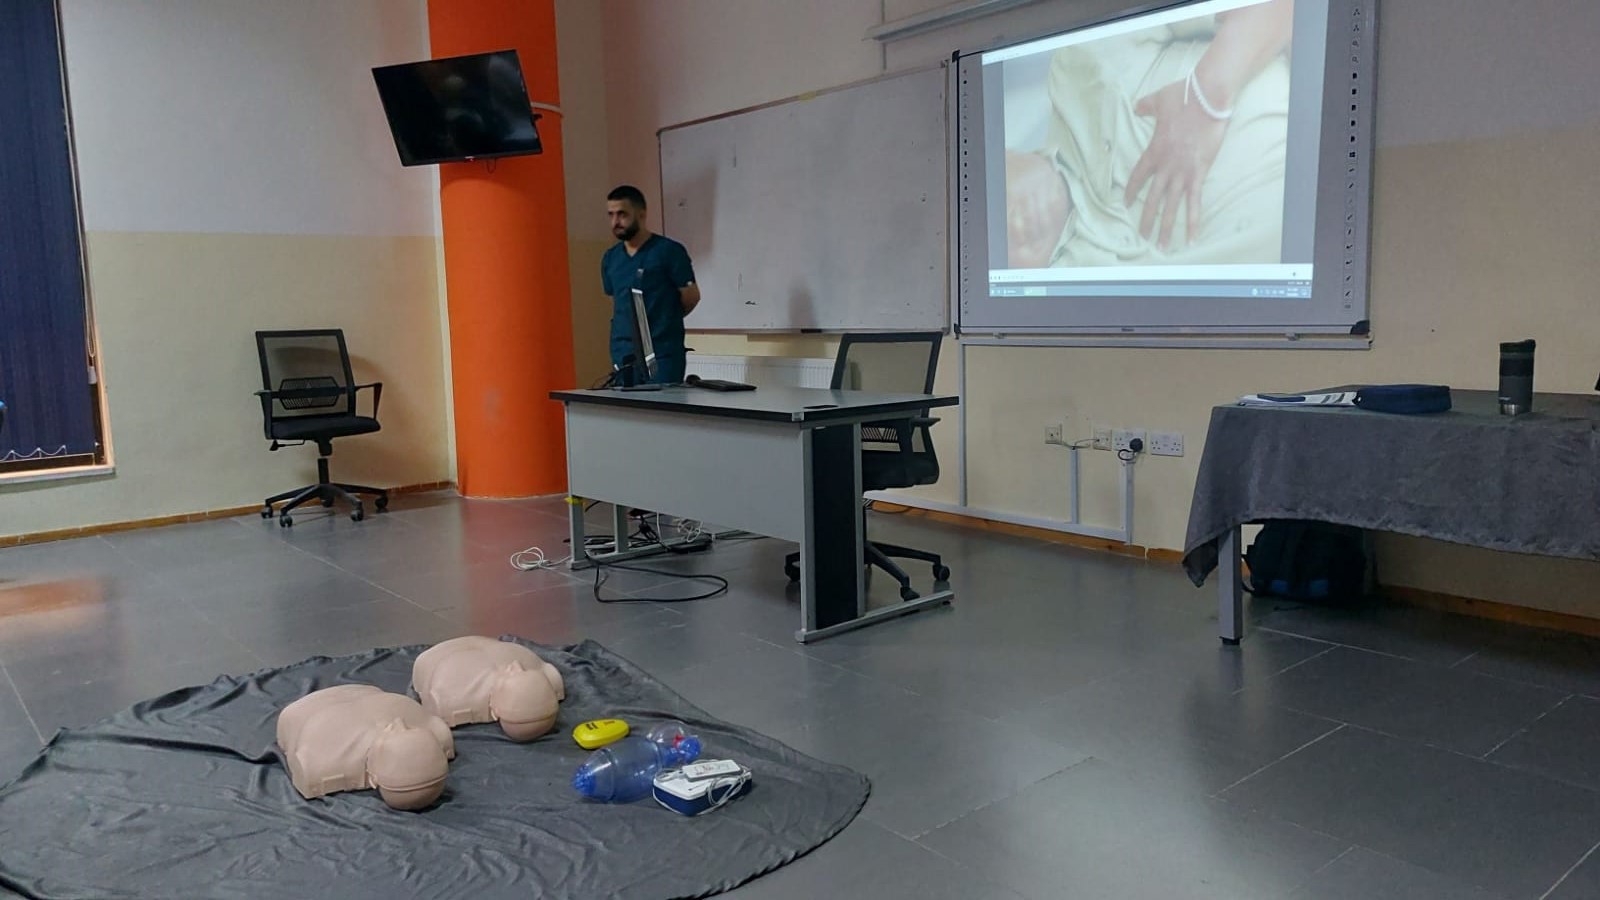 دورة تدريبية متقدمة حول "الإنعاش القلبي والتنفسي" لطلبة عمان العربية1